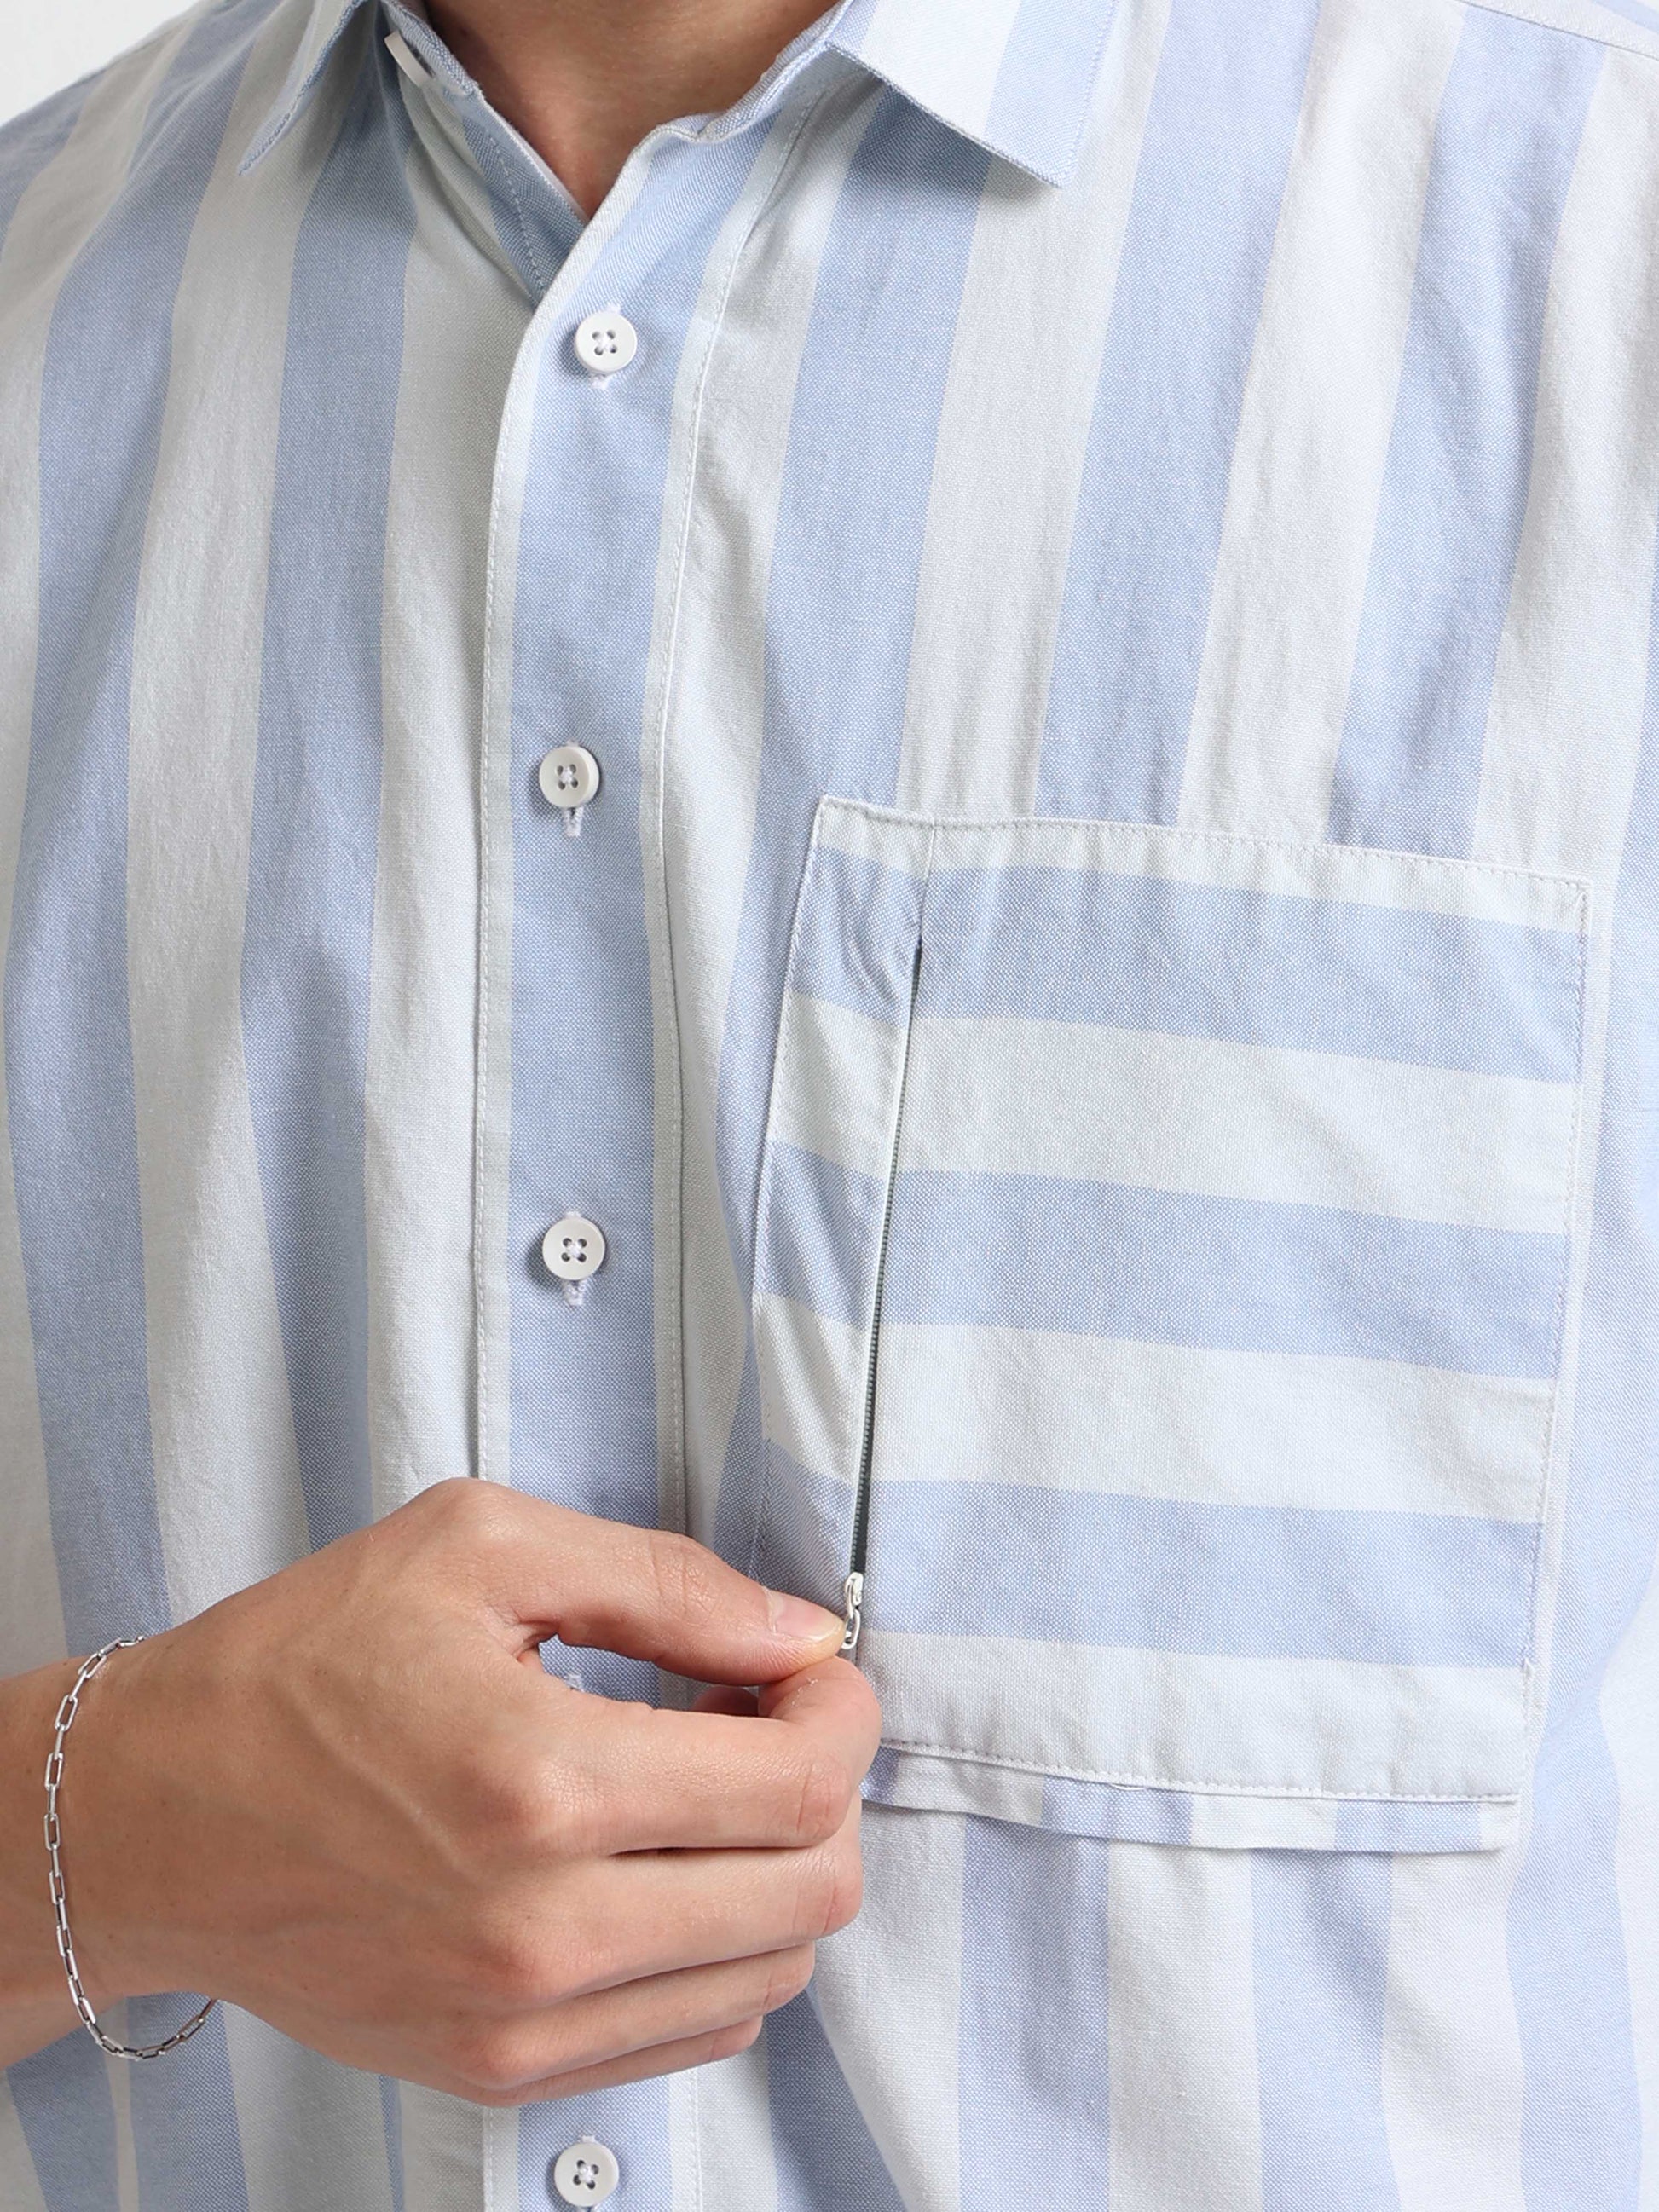 Buy Big Striped Stylish Pocket Shirt Online.